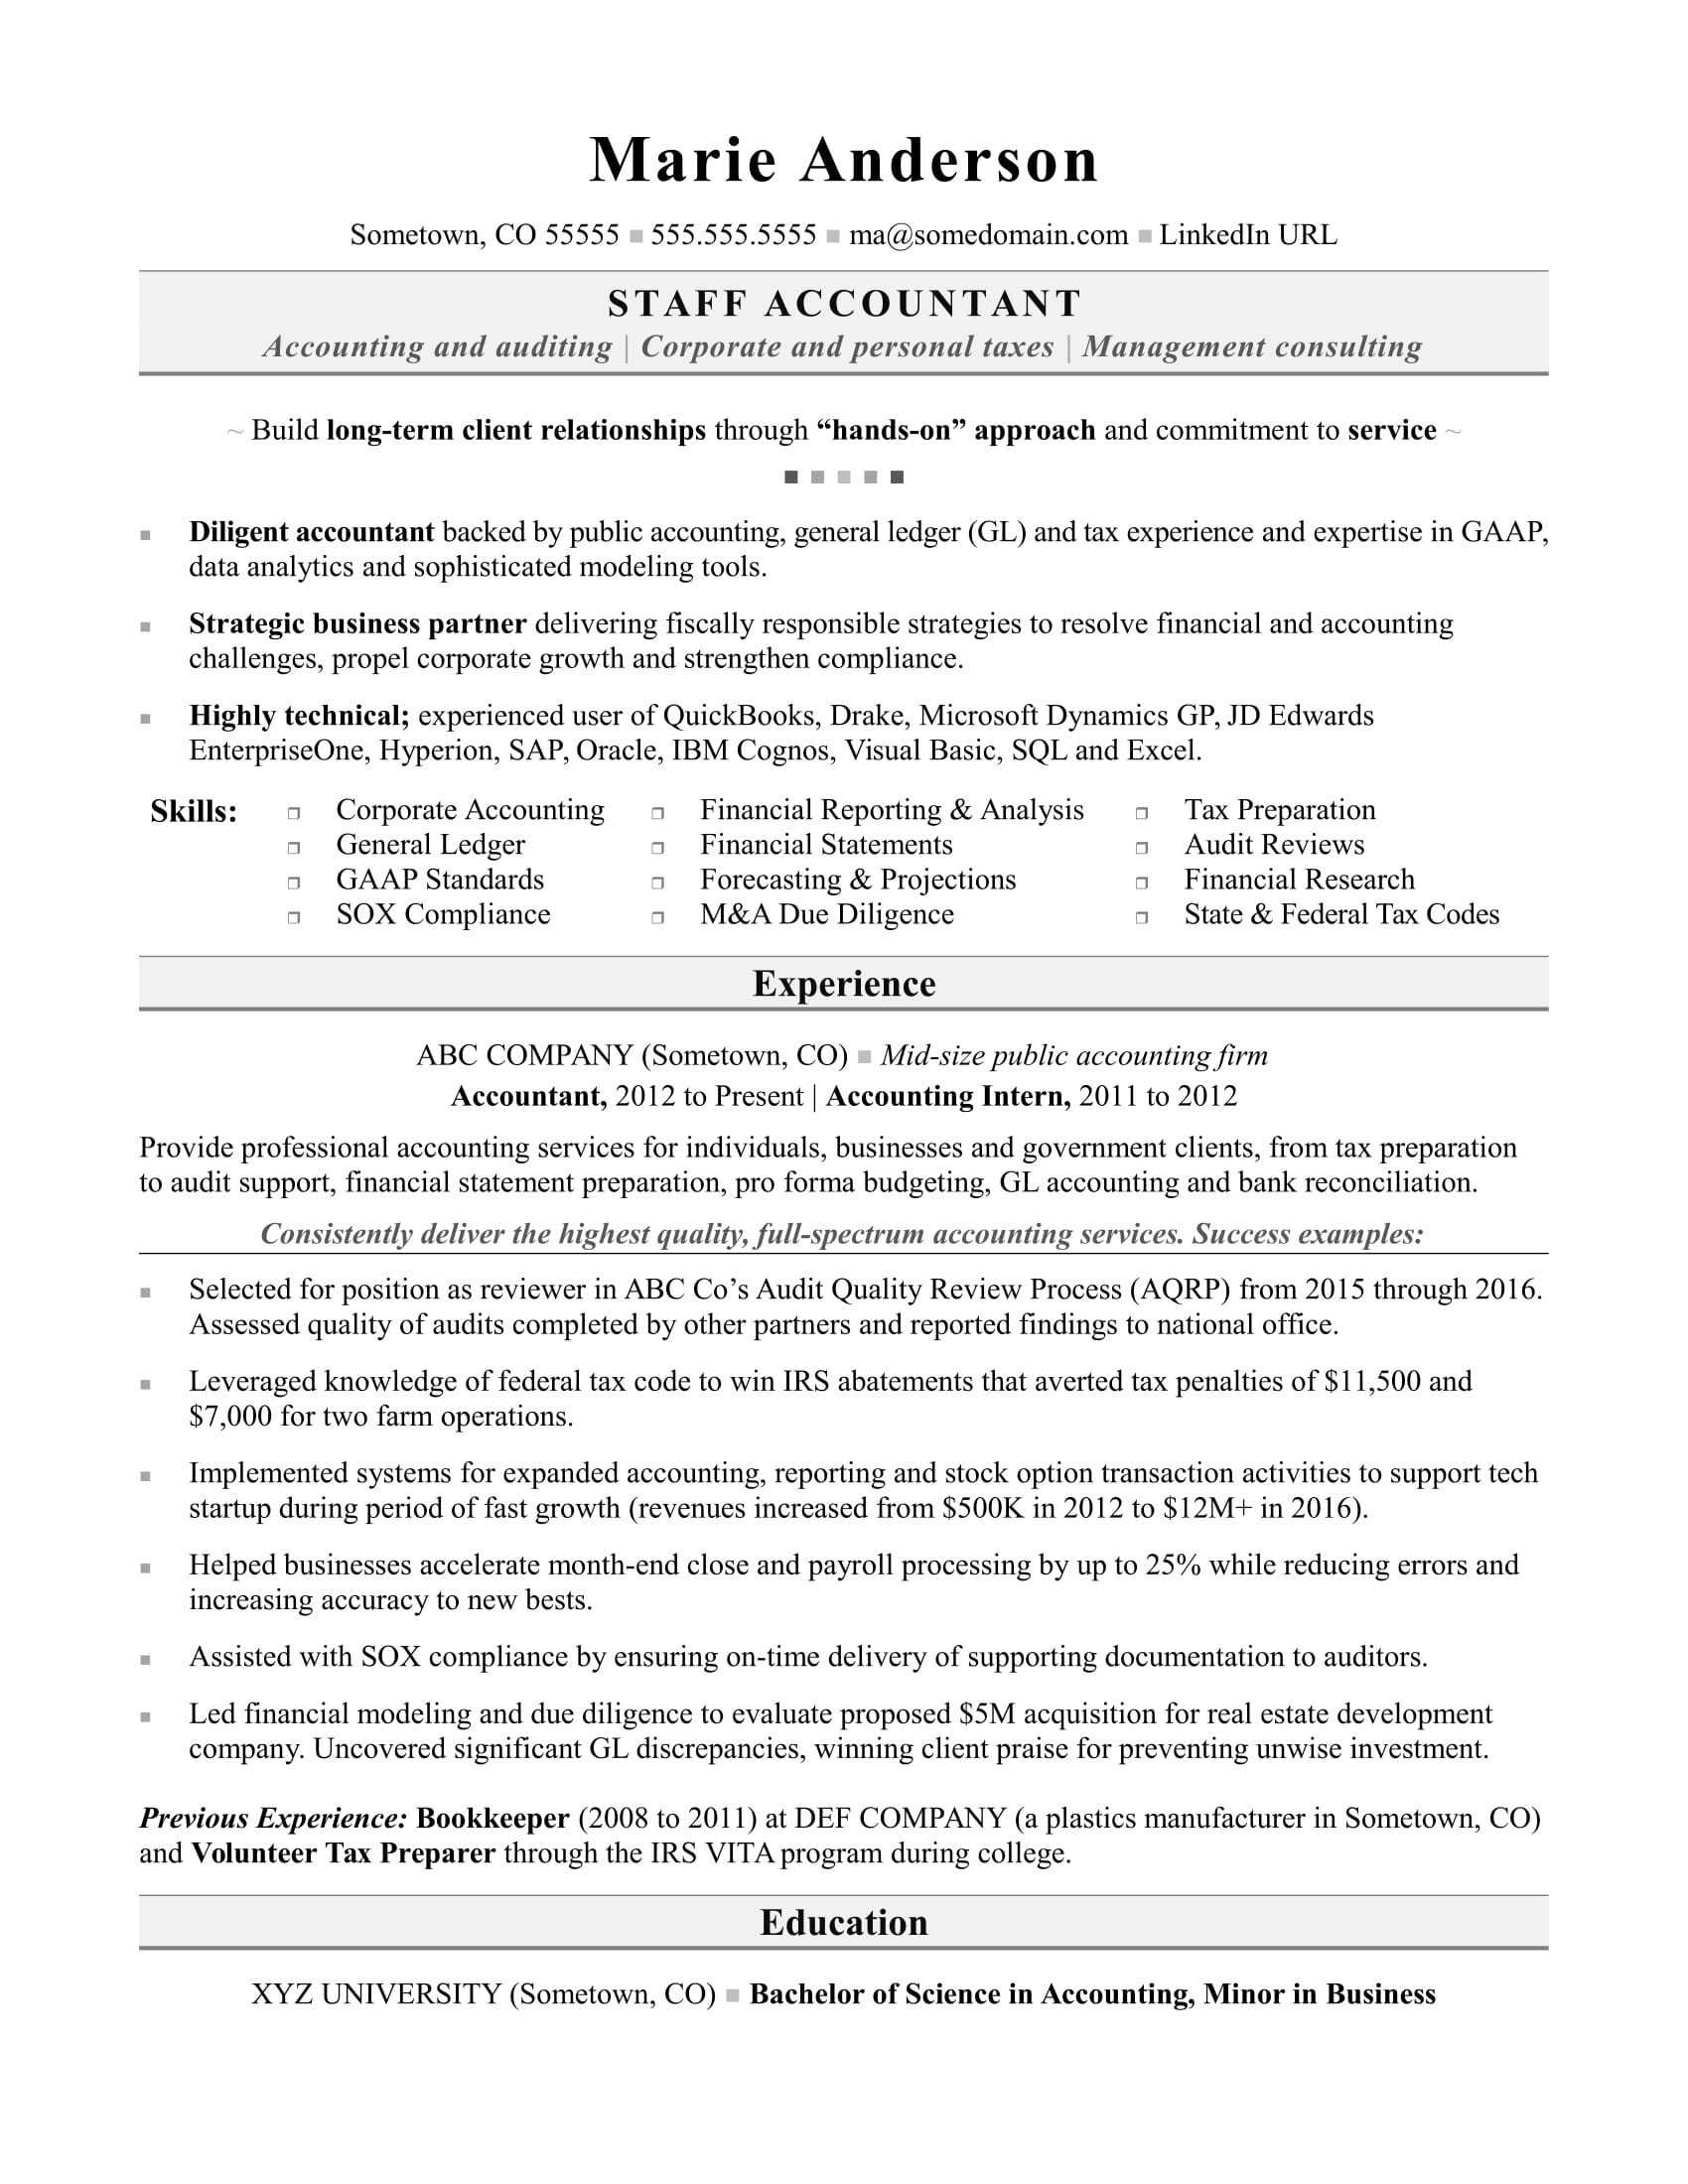 Sample Resume for Us Tax Preparer Accountant Resume Monster.com